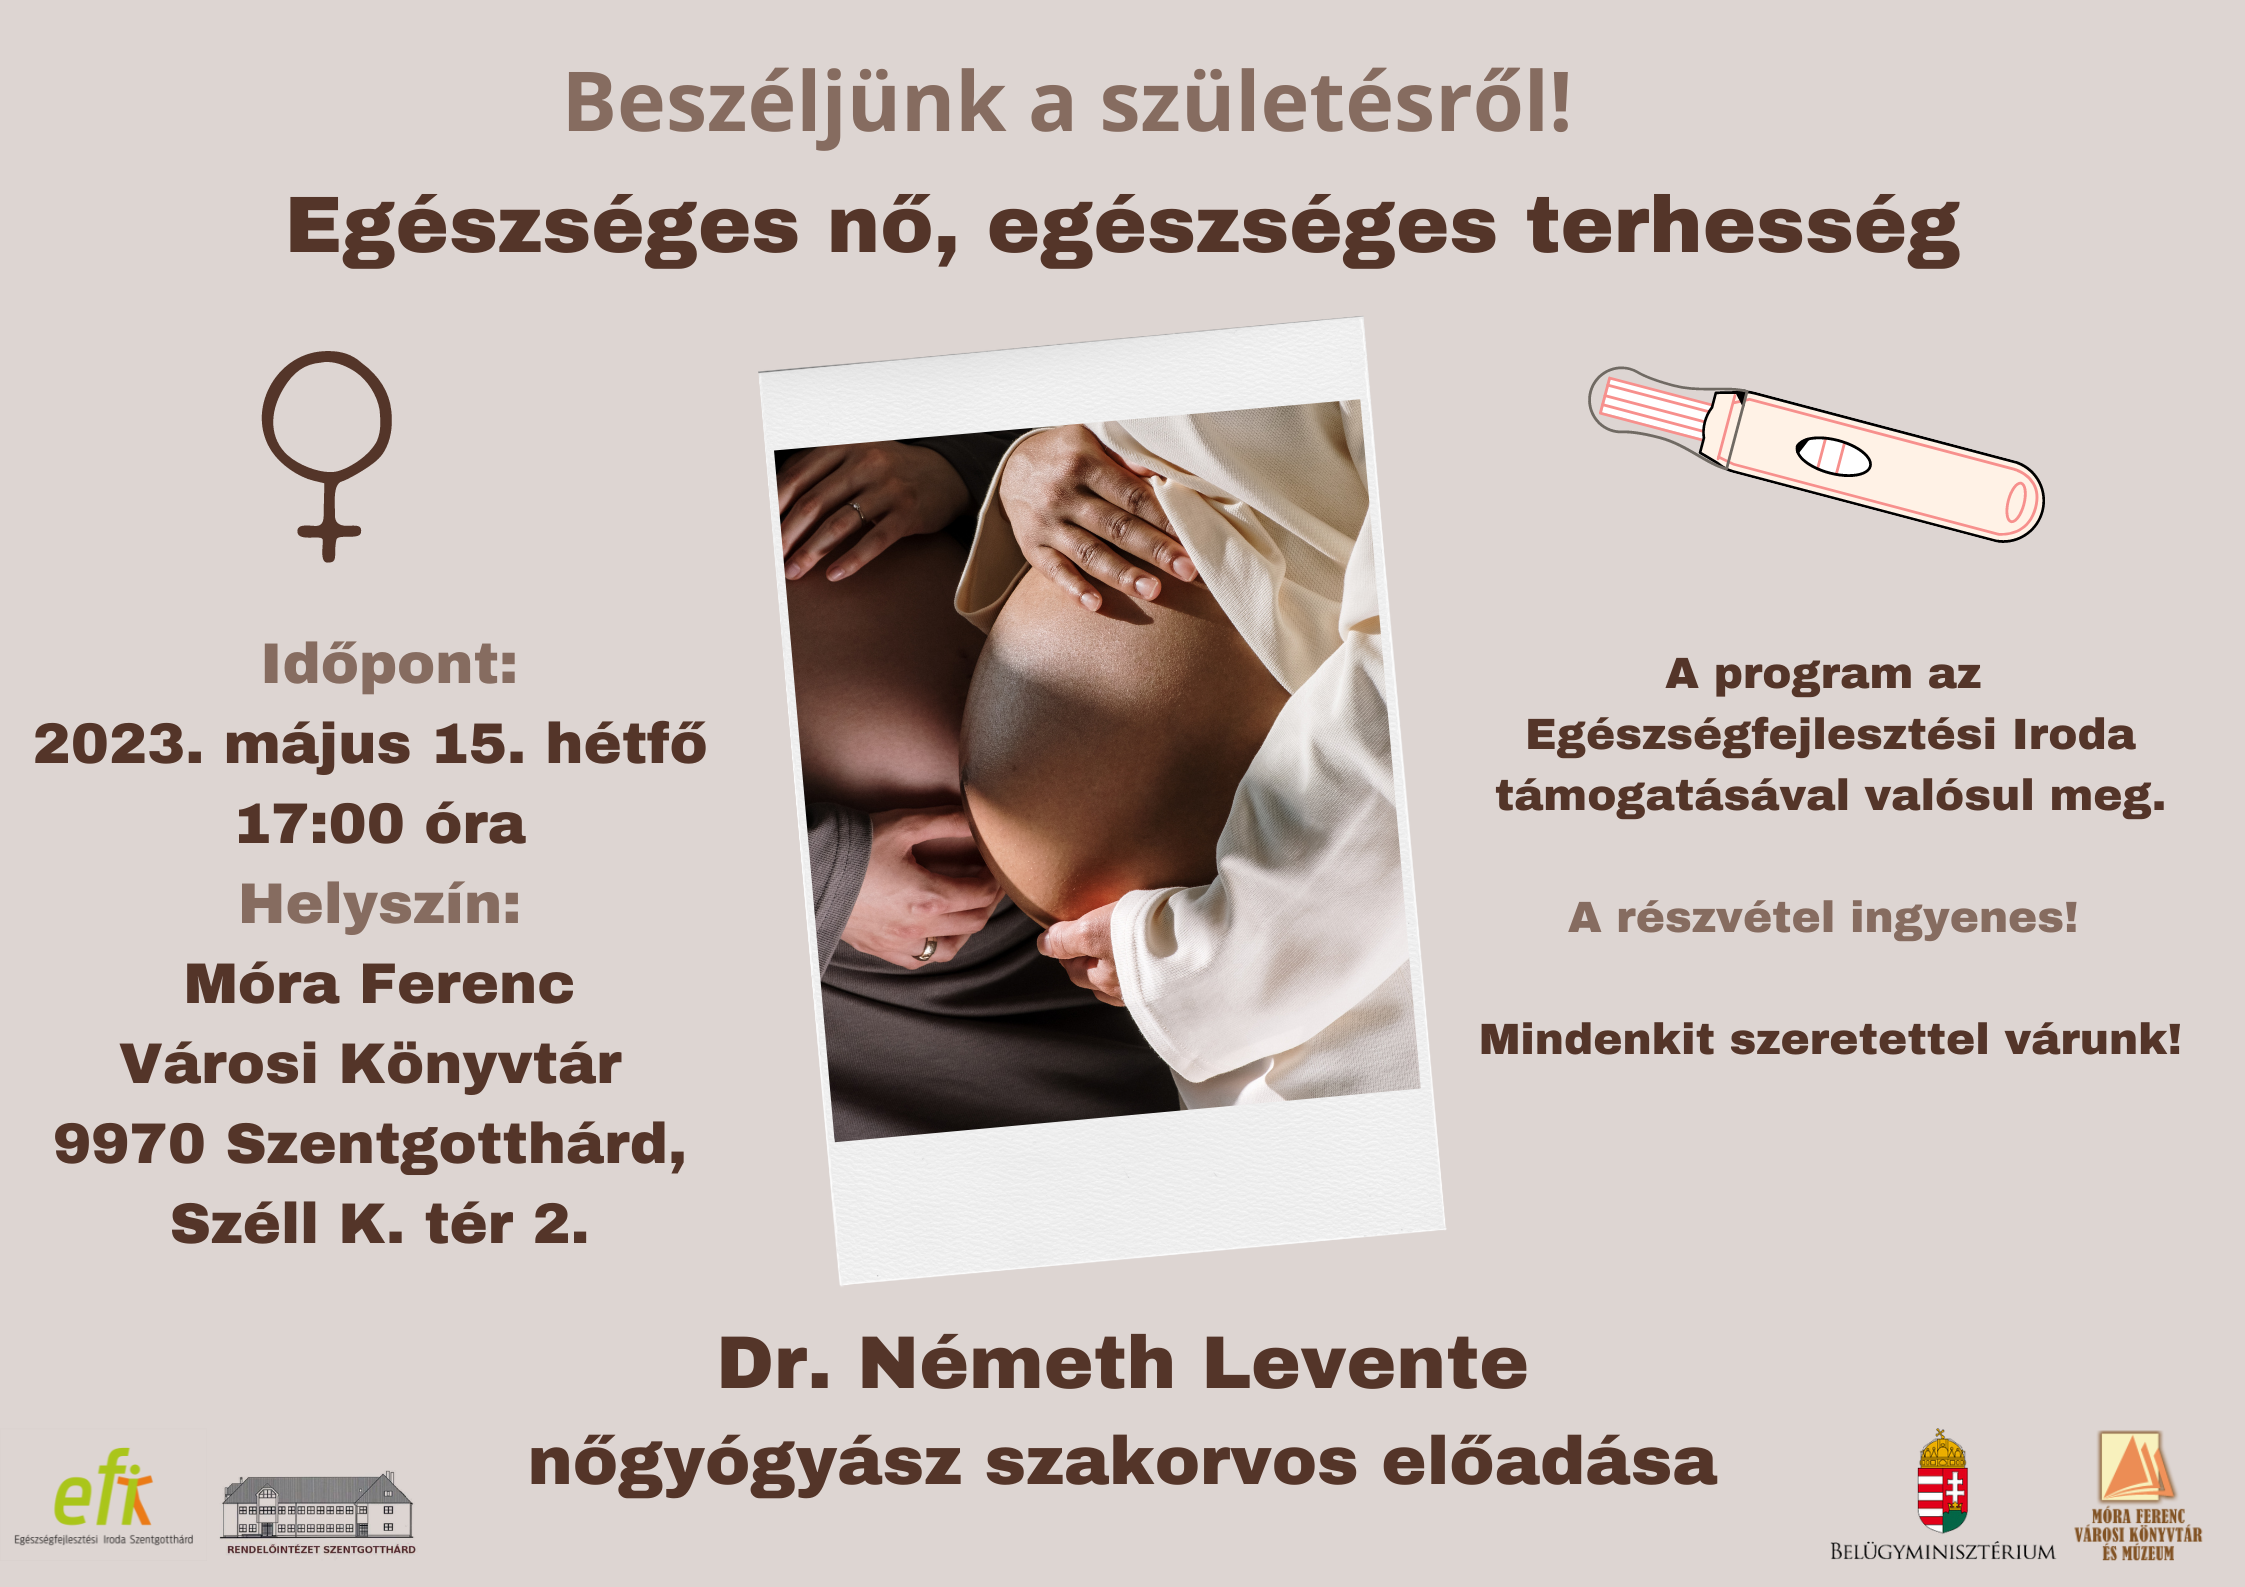 Beszéljünk a születésről! Egészséges nő, egészséges terhesség. Dr. Németh Levente nőgyógyász szakorvos előadása. Időpont: 2023.05.15. hétfő17:00 óra Helyszín: Móra Ferenc Városi Könyvtár  Szentgotthárd, Széll Kálmán tér 2. A program az EFI támogatásával valósul meg. A részvétel ingyenes! Mindenkit szeretettel várunk!